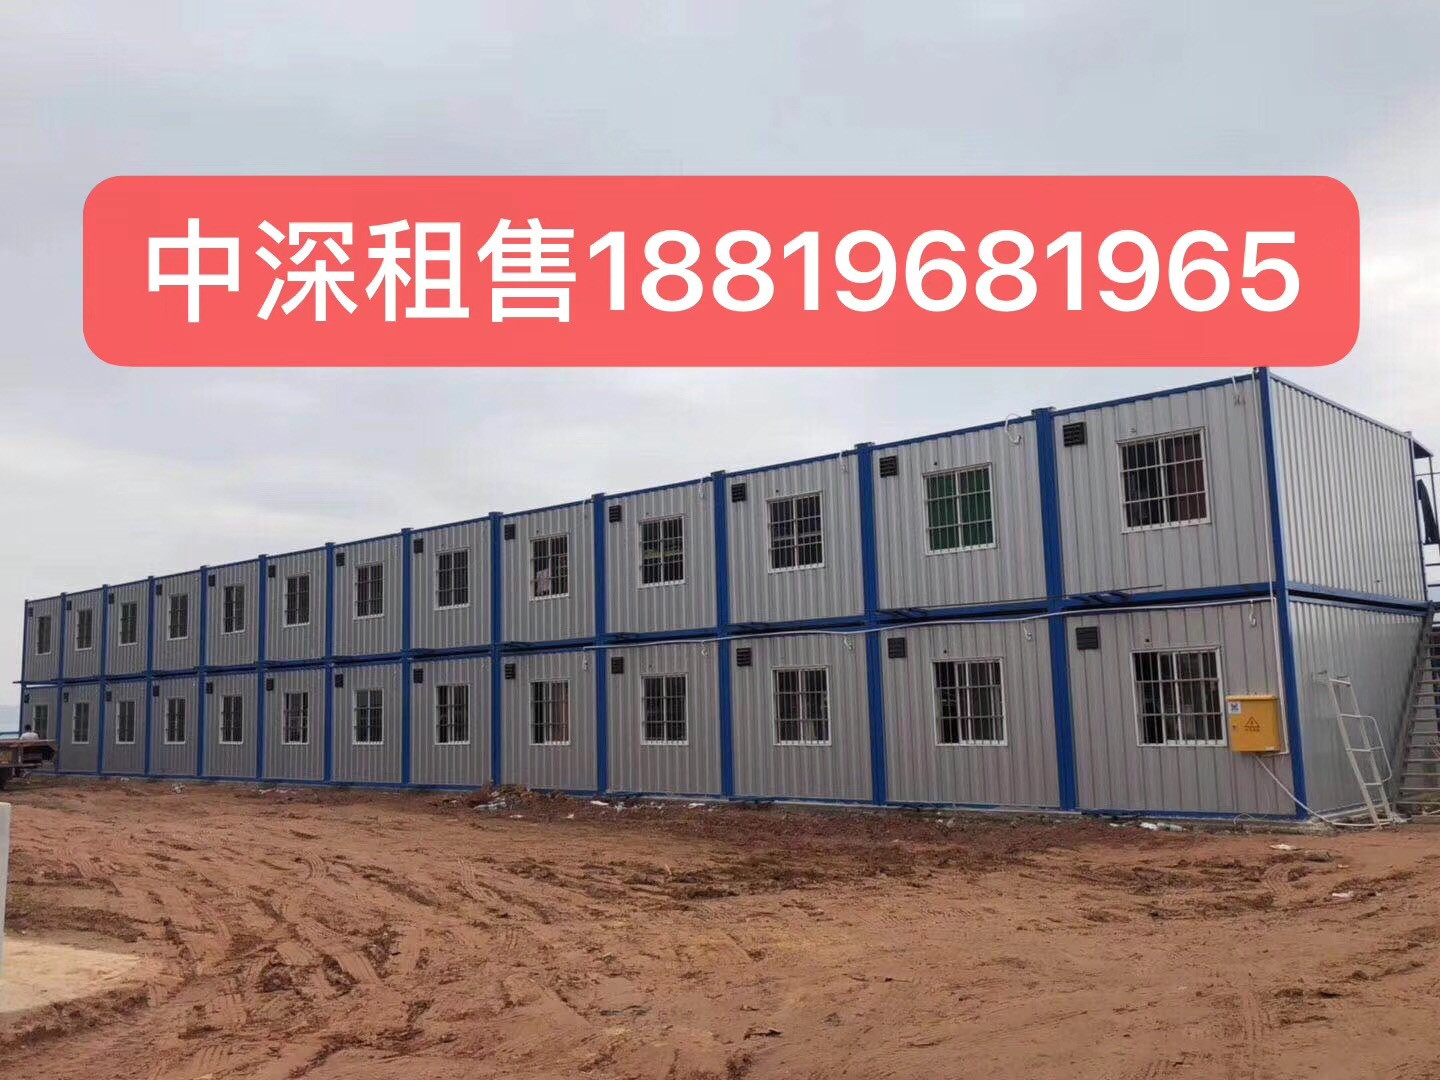 绿色环保，价格实惠的二手集装箱就找深圳中深集装箱厂家